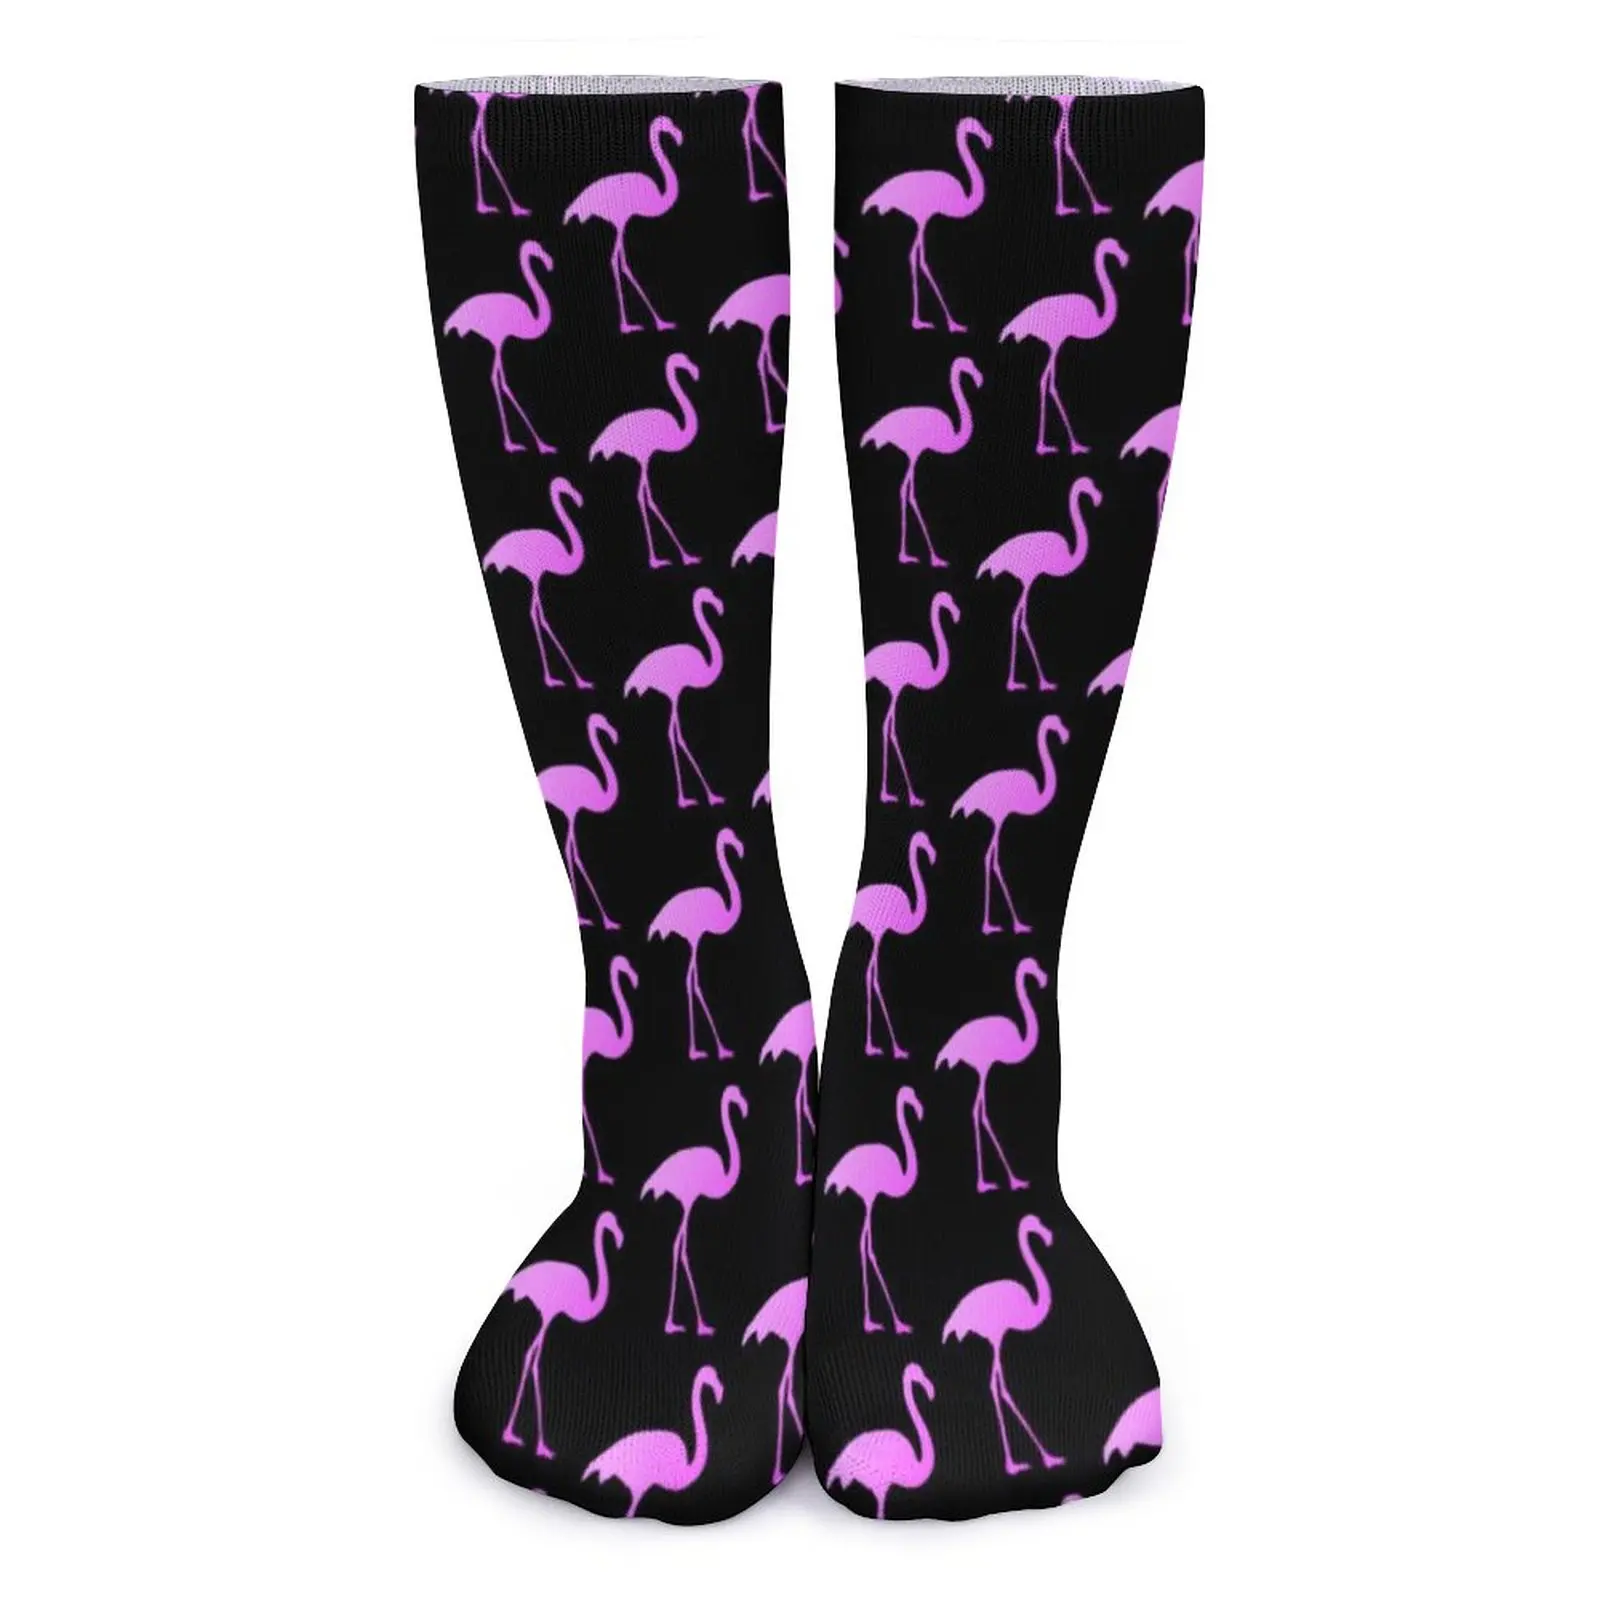 

Носки с принтом птиц розовые Фламинго Модные осенние чулки Нескользящие женские и мужские носки, мягкие носки с графическим рисунком для улицы